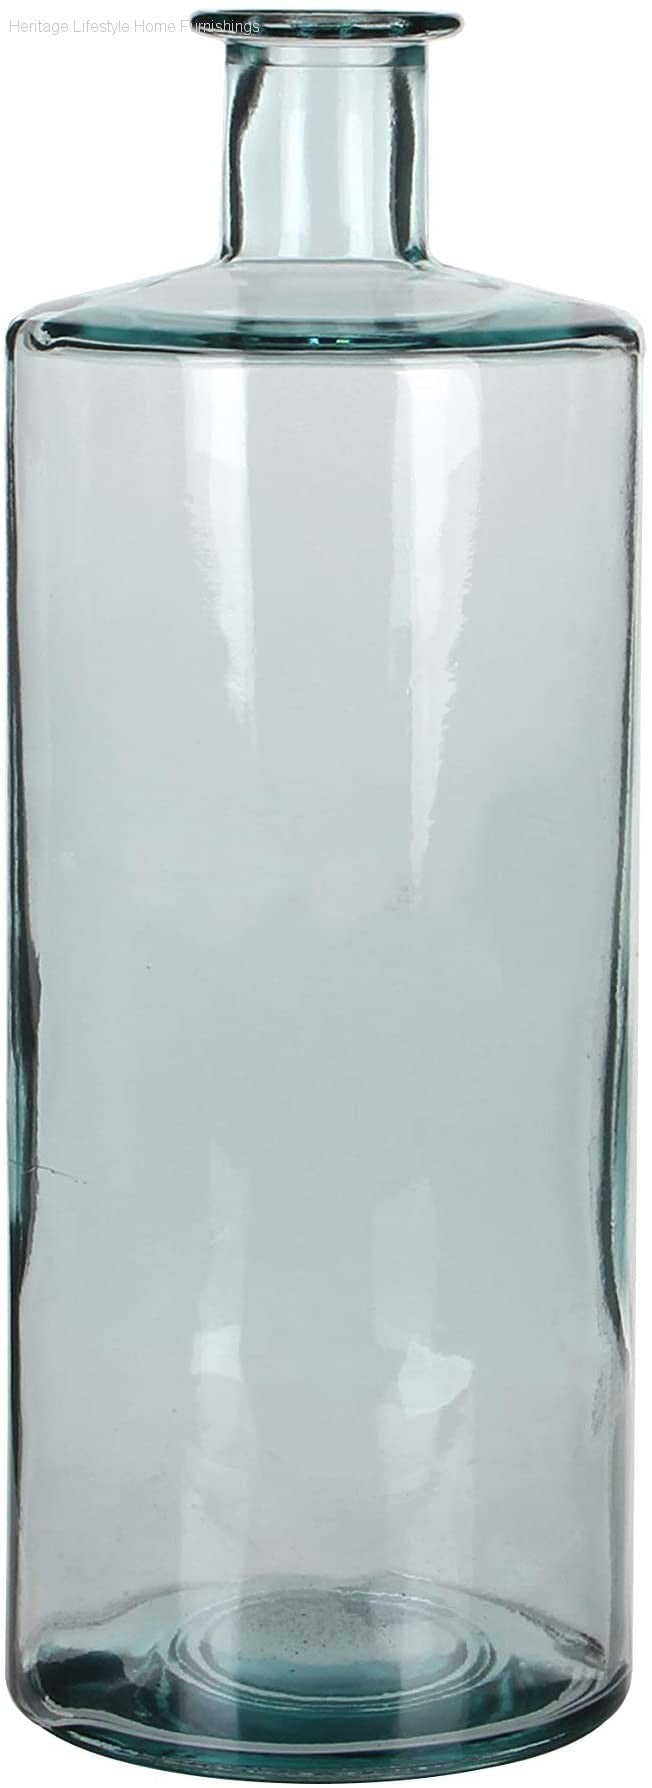 Accessories - Guan Glass Bottle